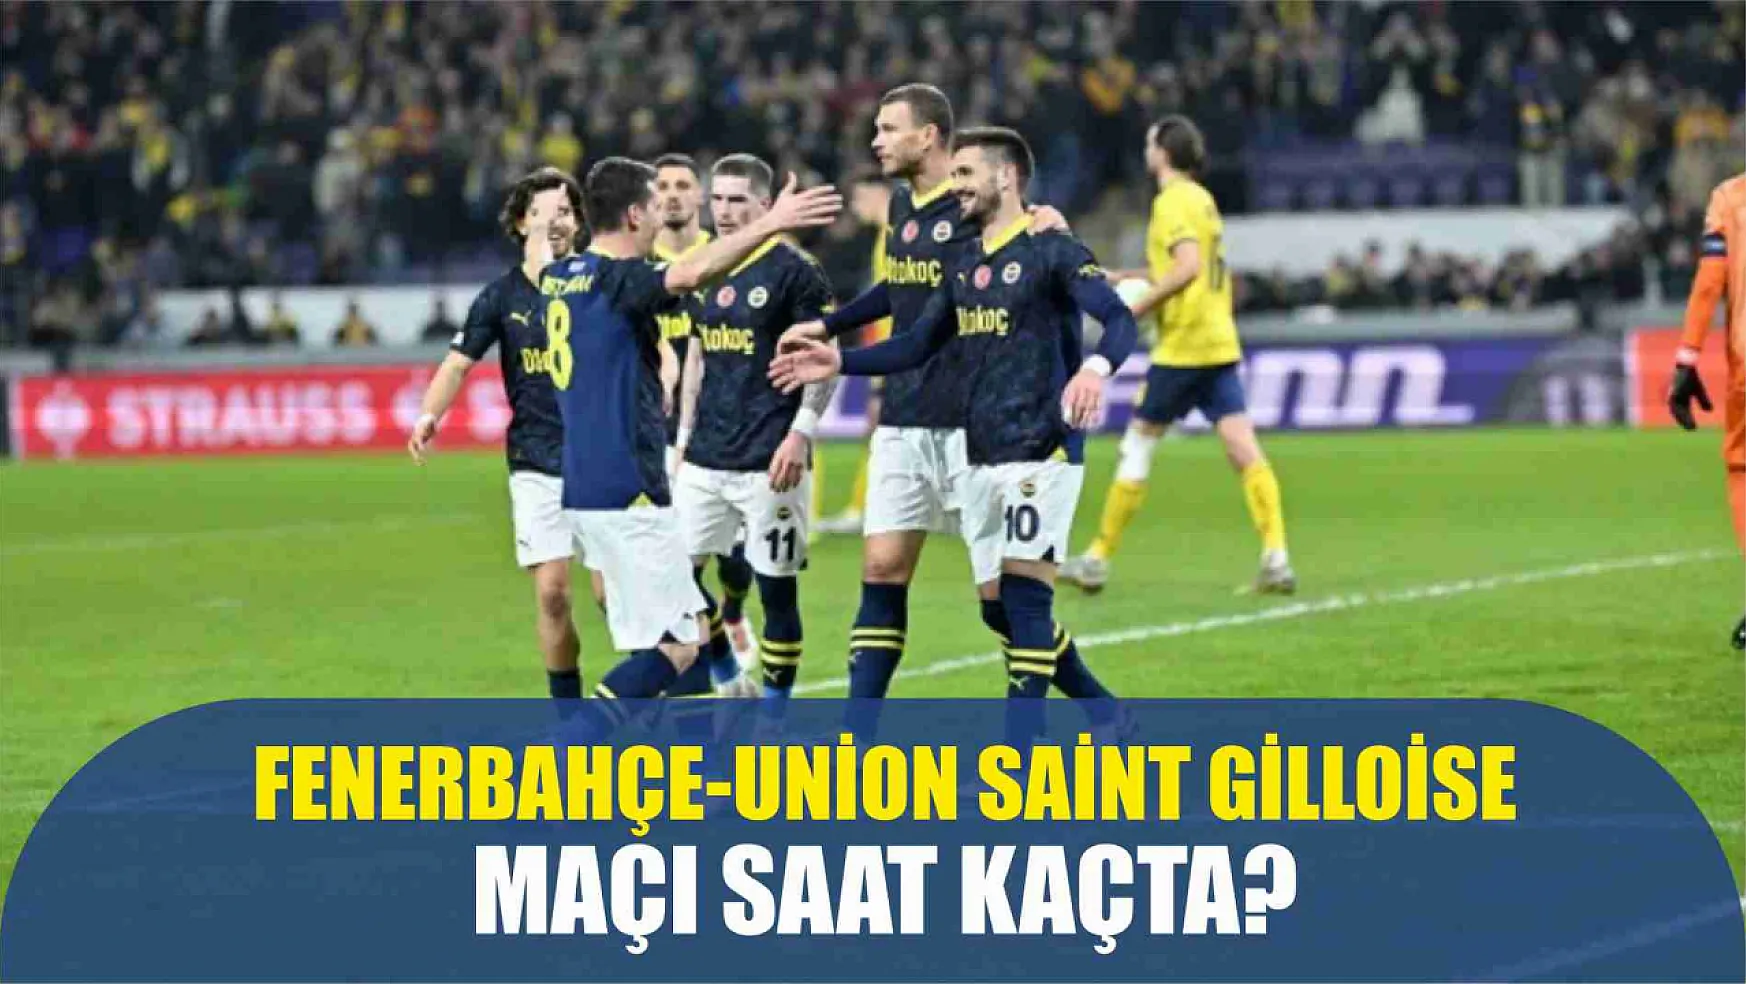 Fenerbahçe-Union Saint Gilloise maçı ne zaman, saat kaçta, hangi kanalda ve şifresiz mi?